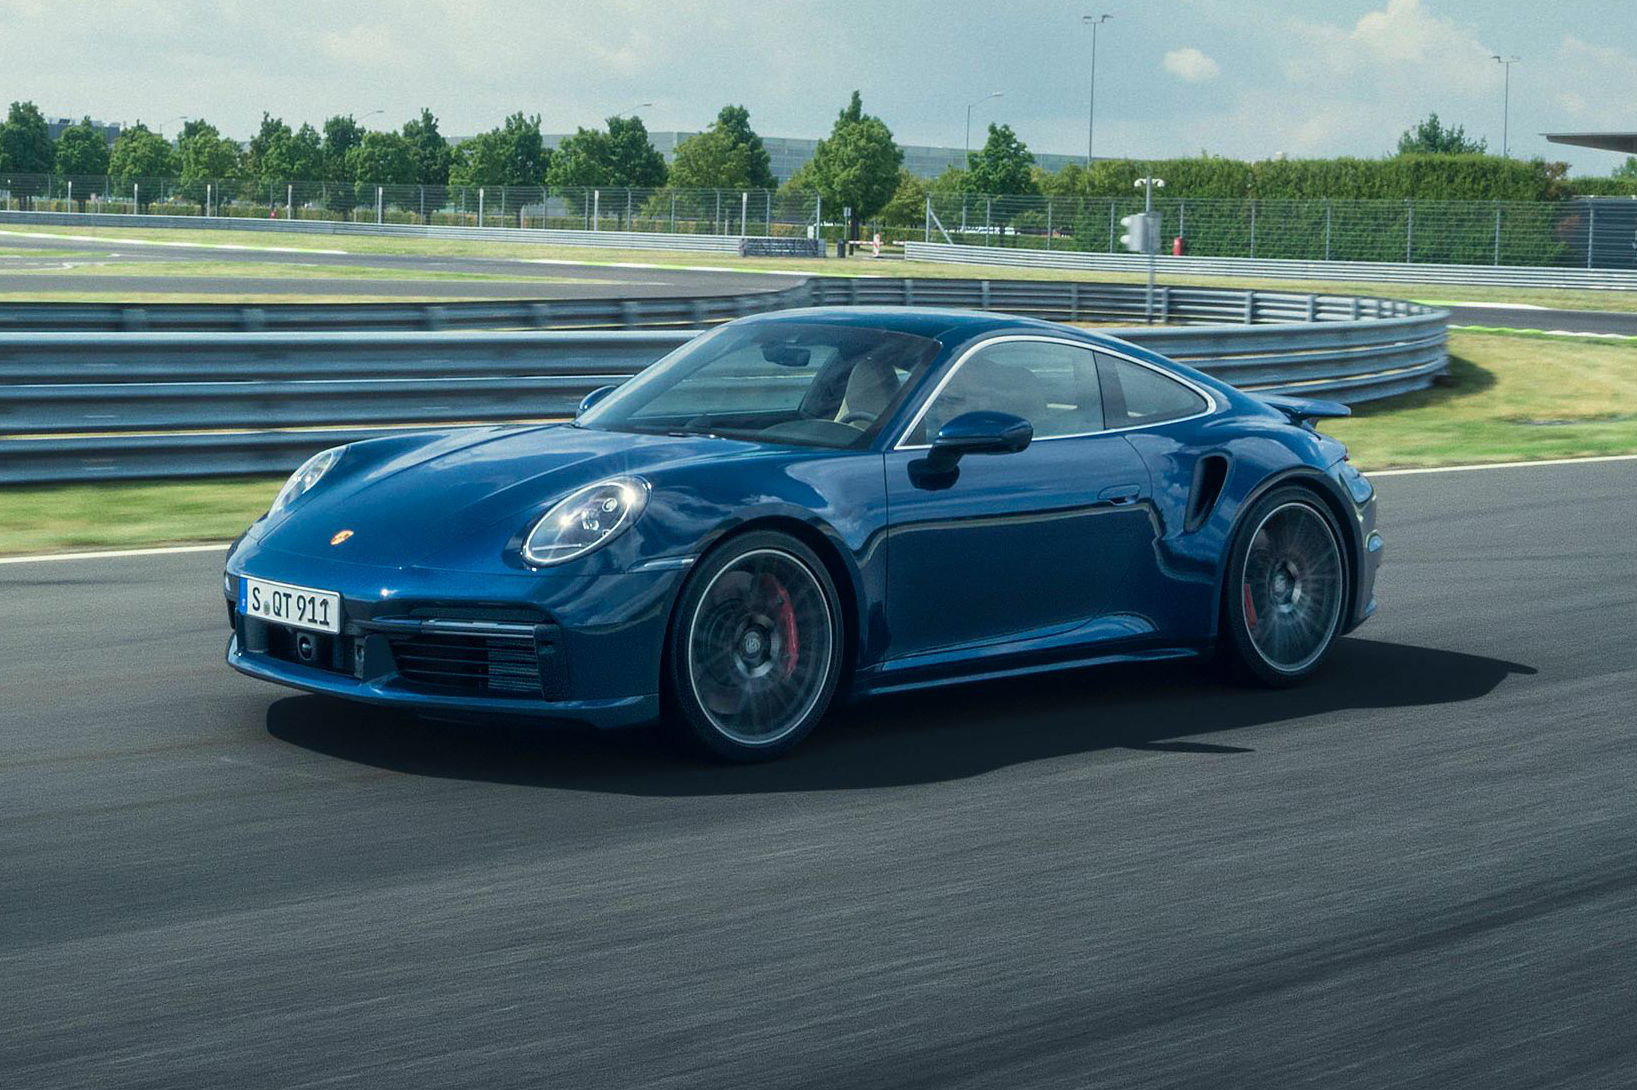 Porsche 911 phiên bản mới lần đầu tiên lộ diện